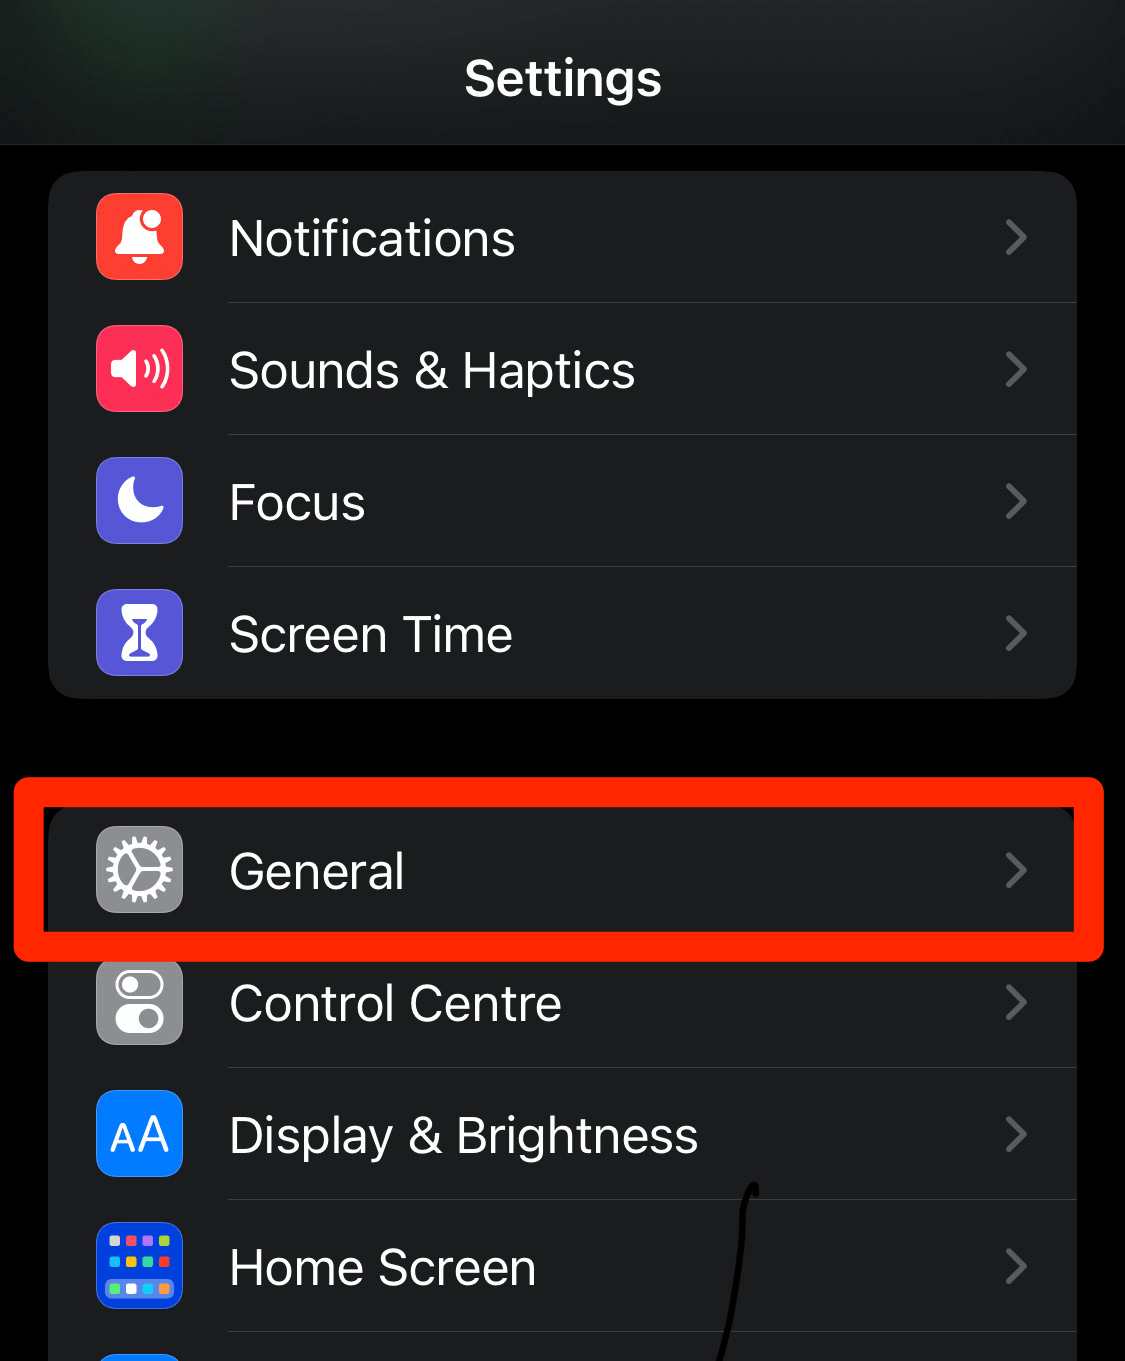 General Settings menu in iPhone Settings app